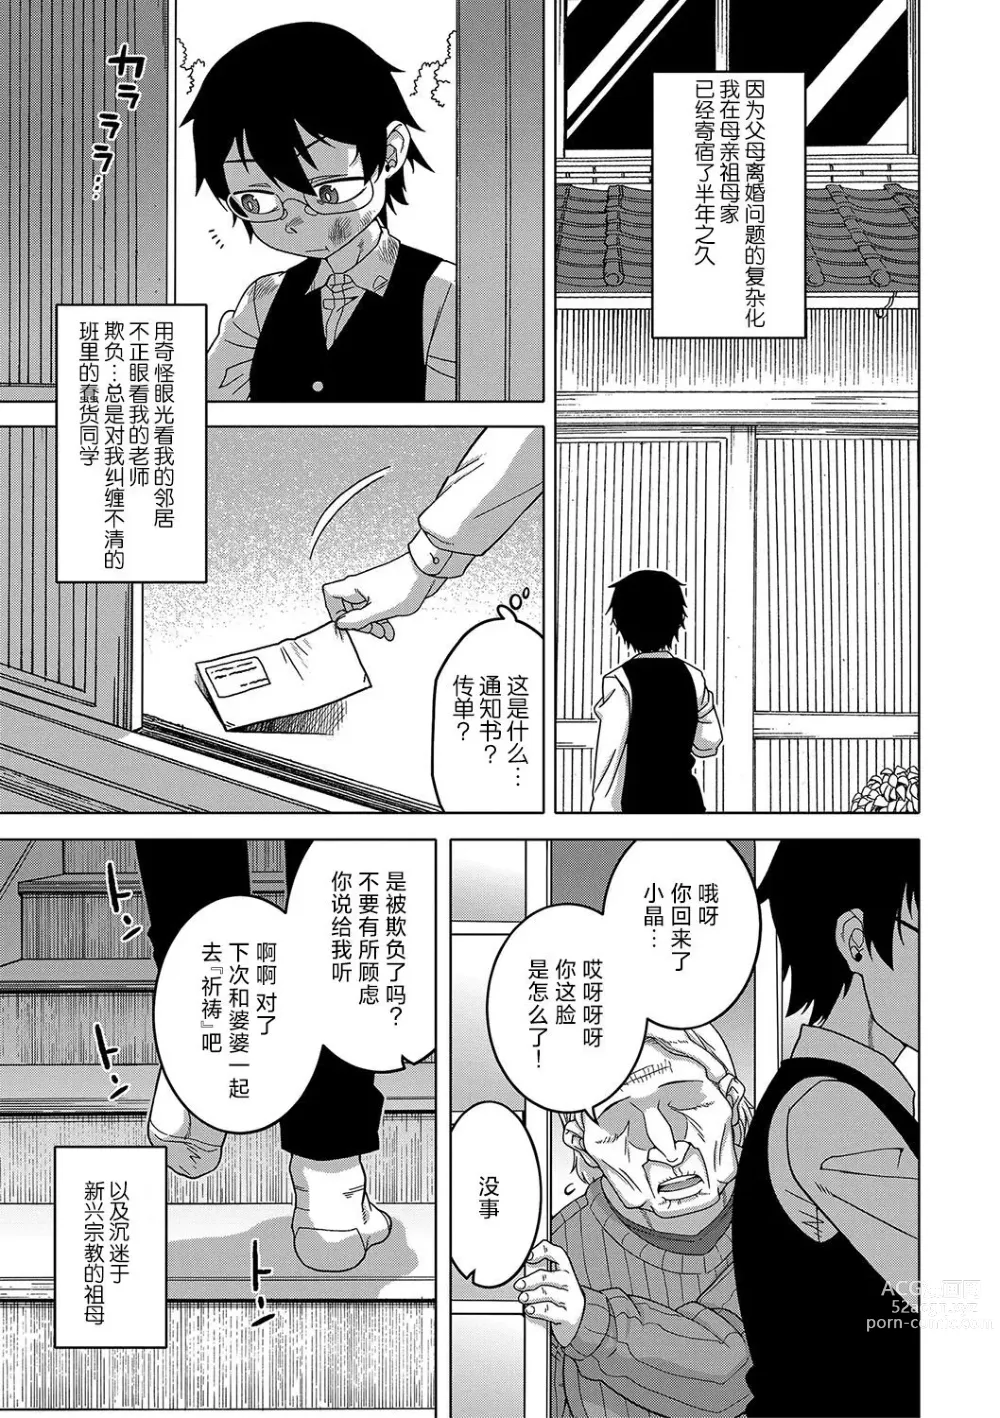 Page 7 of manga Kyouso-sama no Tsukurikata